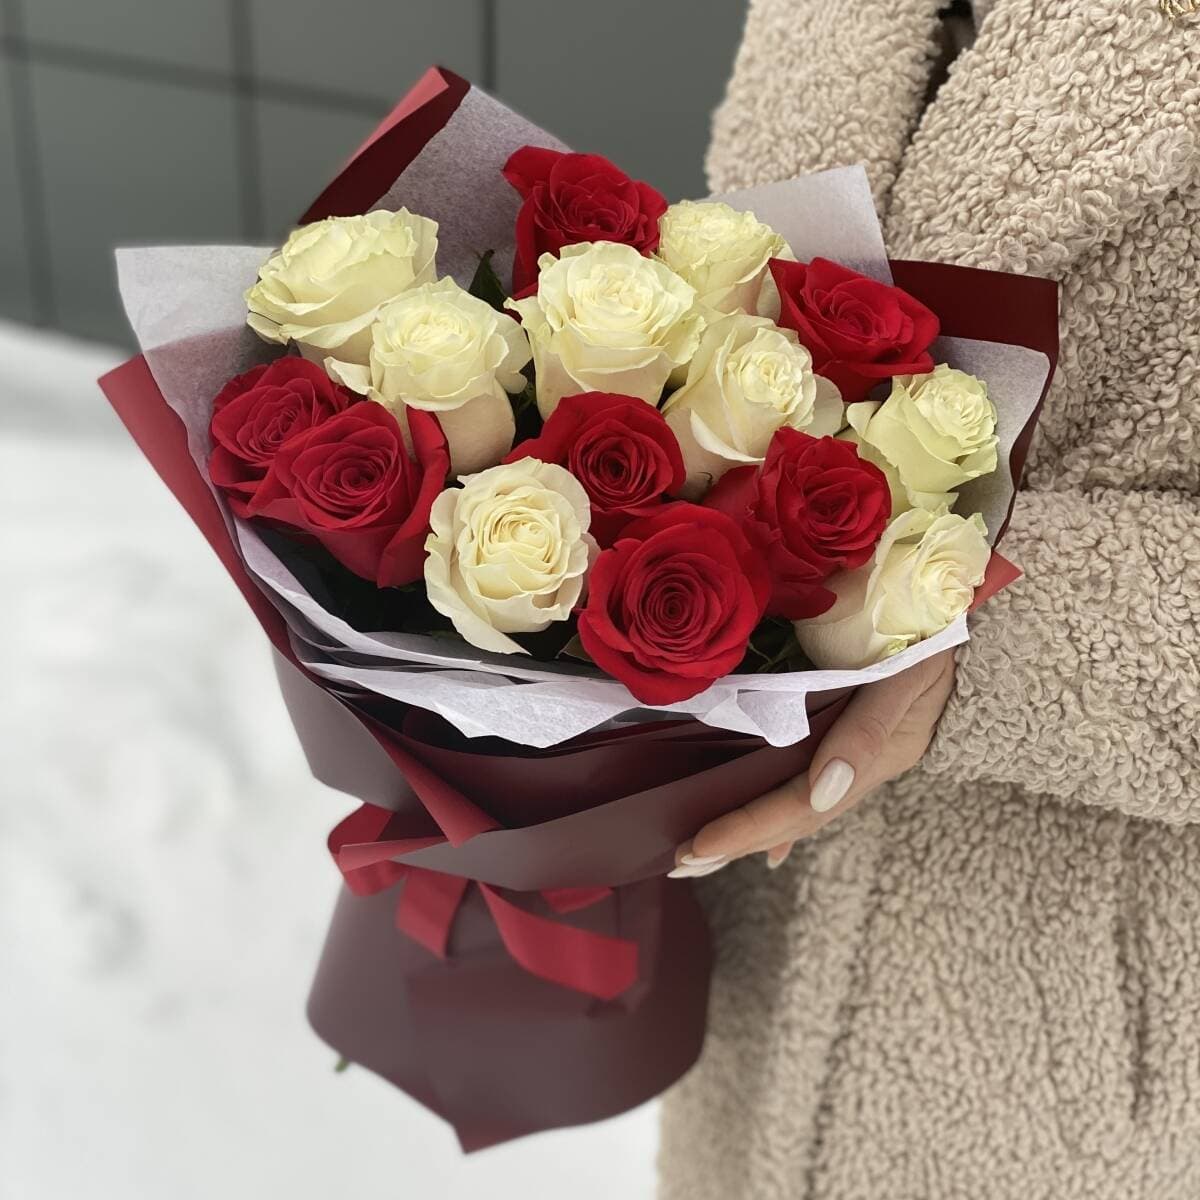 Букет Влюбленный взгляд из 15 красных и белых роз в оформлении - Доставкойцветов в Москве! 41878 товаров! Цены от 487 руб. Цветы Тут